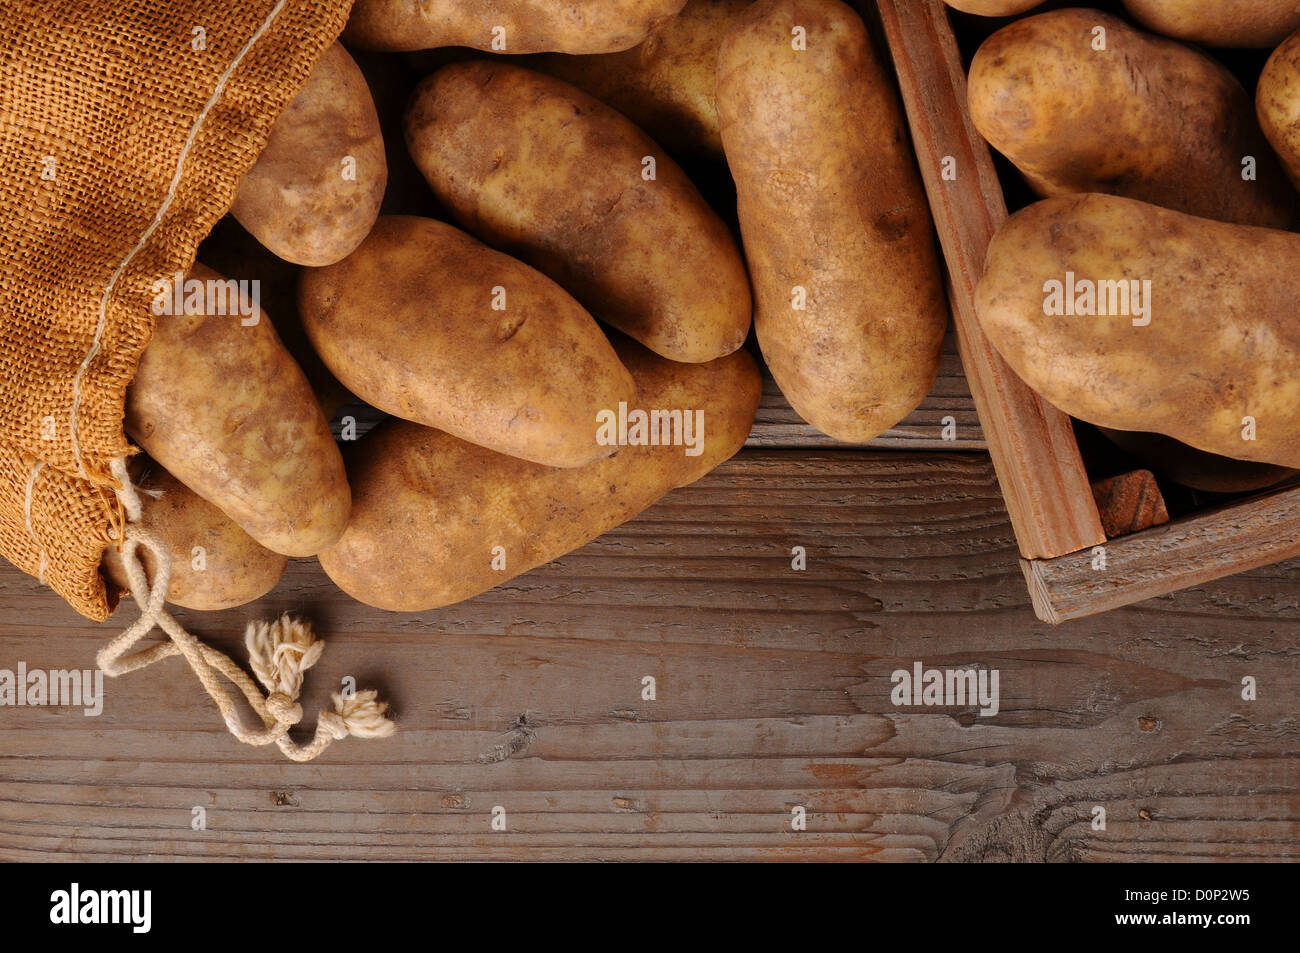 Une toile sac de pommes de terre et une caisse en bois sur un fond de bois rustique. Passage tourné en format horizontal avec l'exemplaire de l'espace. Banque D'Images